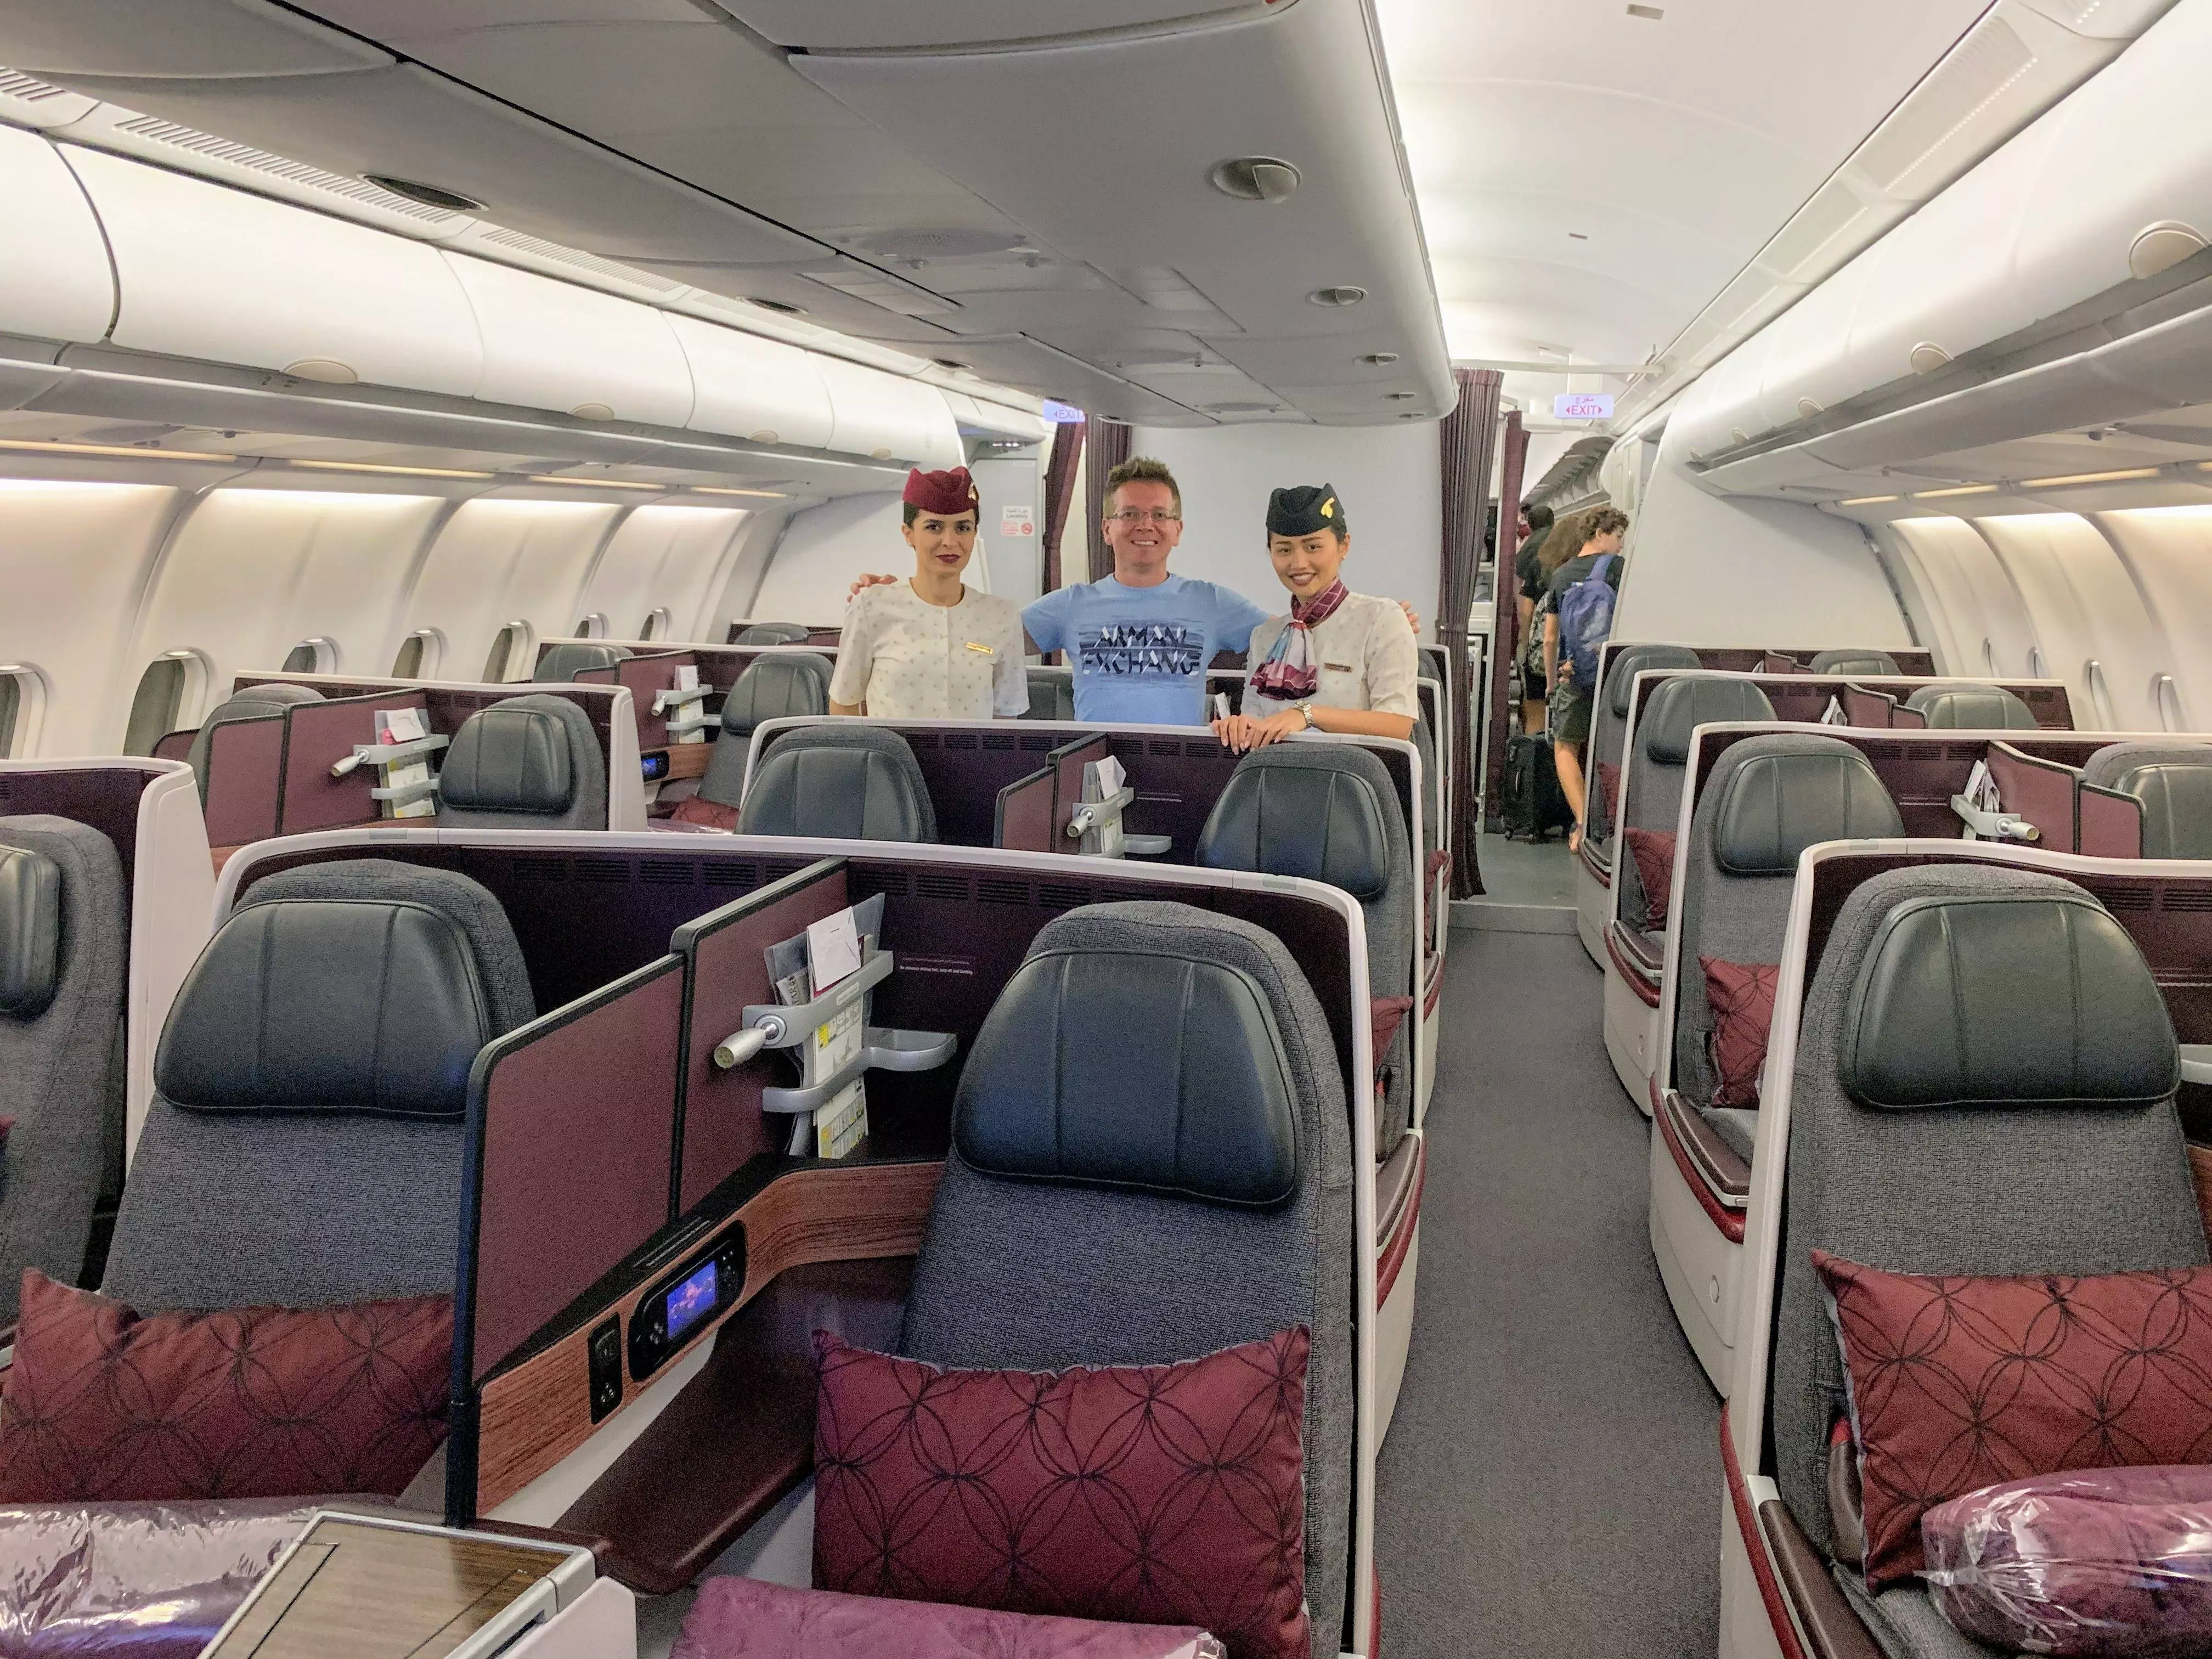 Qatar airways (катар эйрвейз, катарские авиалинии): описание авиакомпании, отзывы пассажиров, флот самолетов, фото